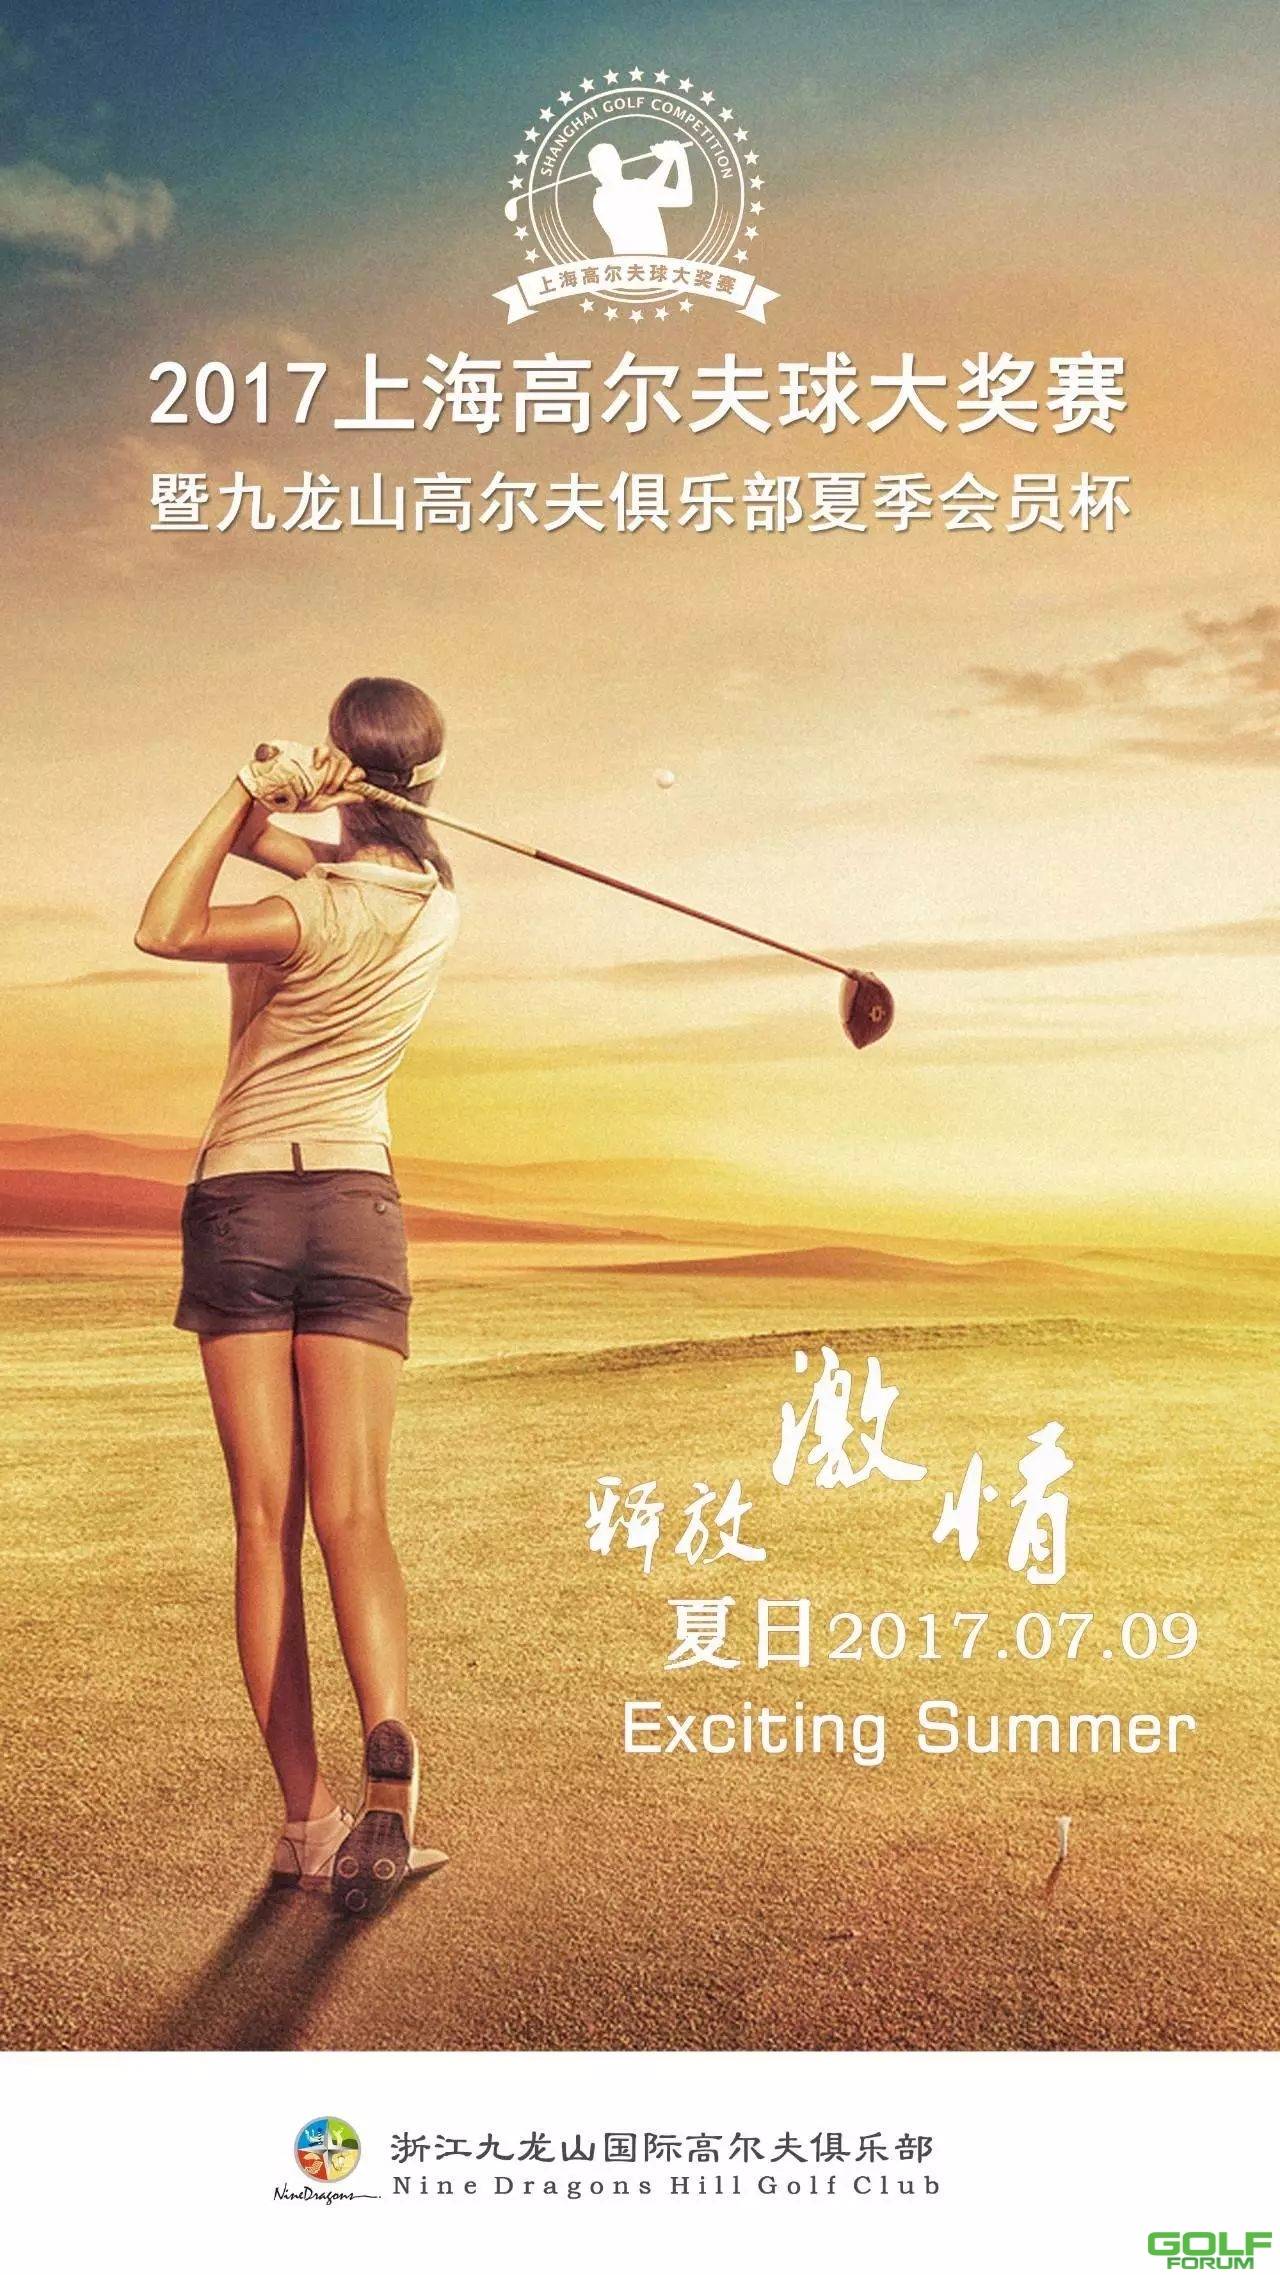 2017上海高尔夫球大奖赛暨九龙山高尔夫俱乐部夏季会员杯7月9日开打 ...